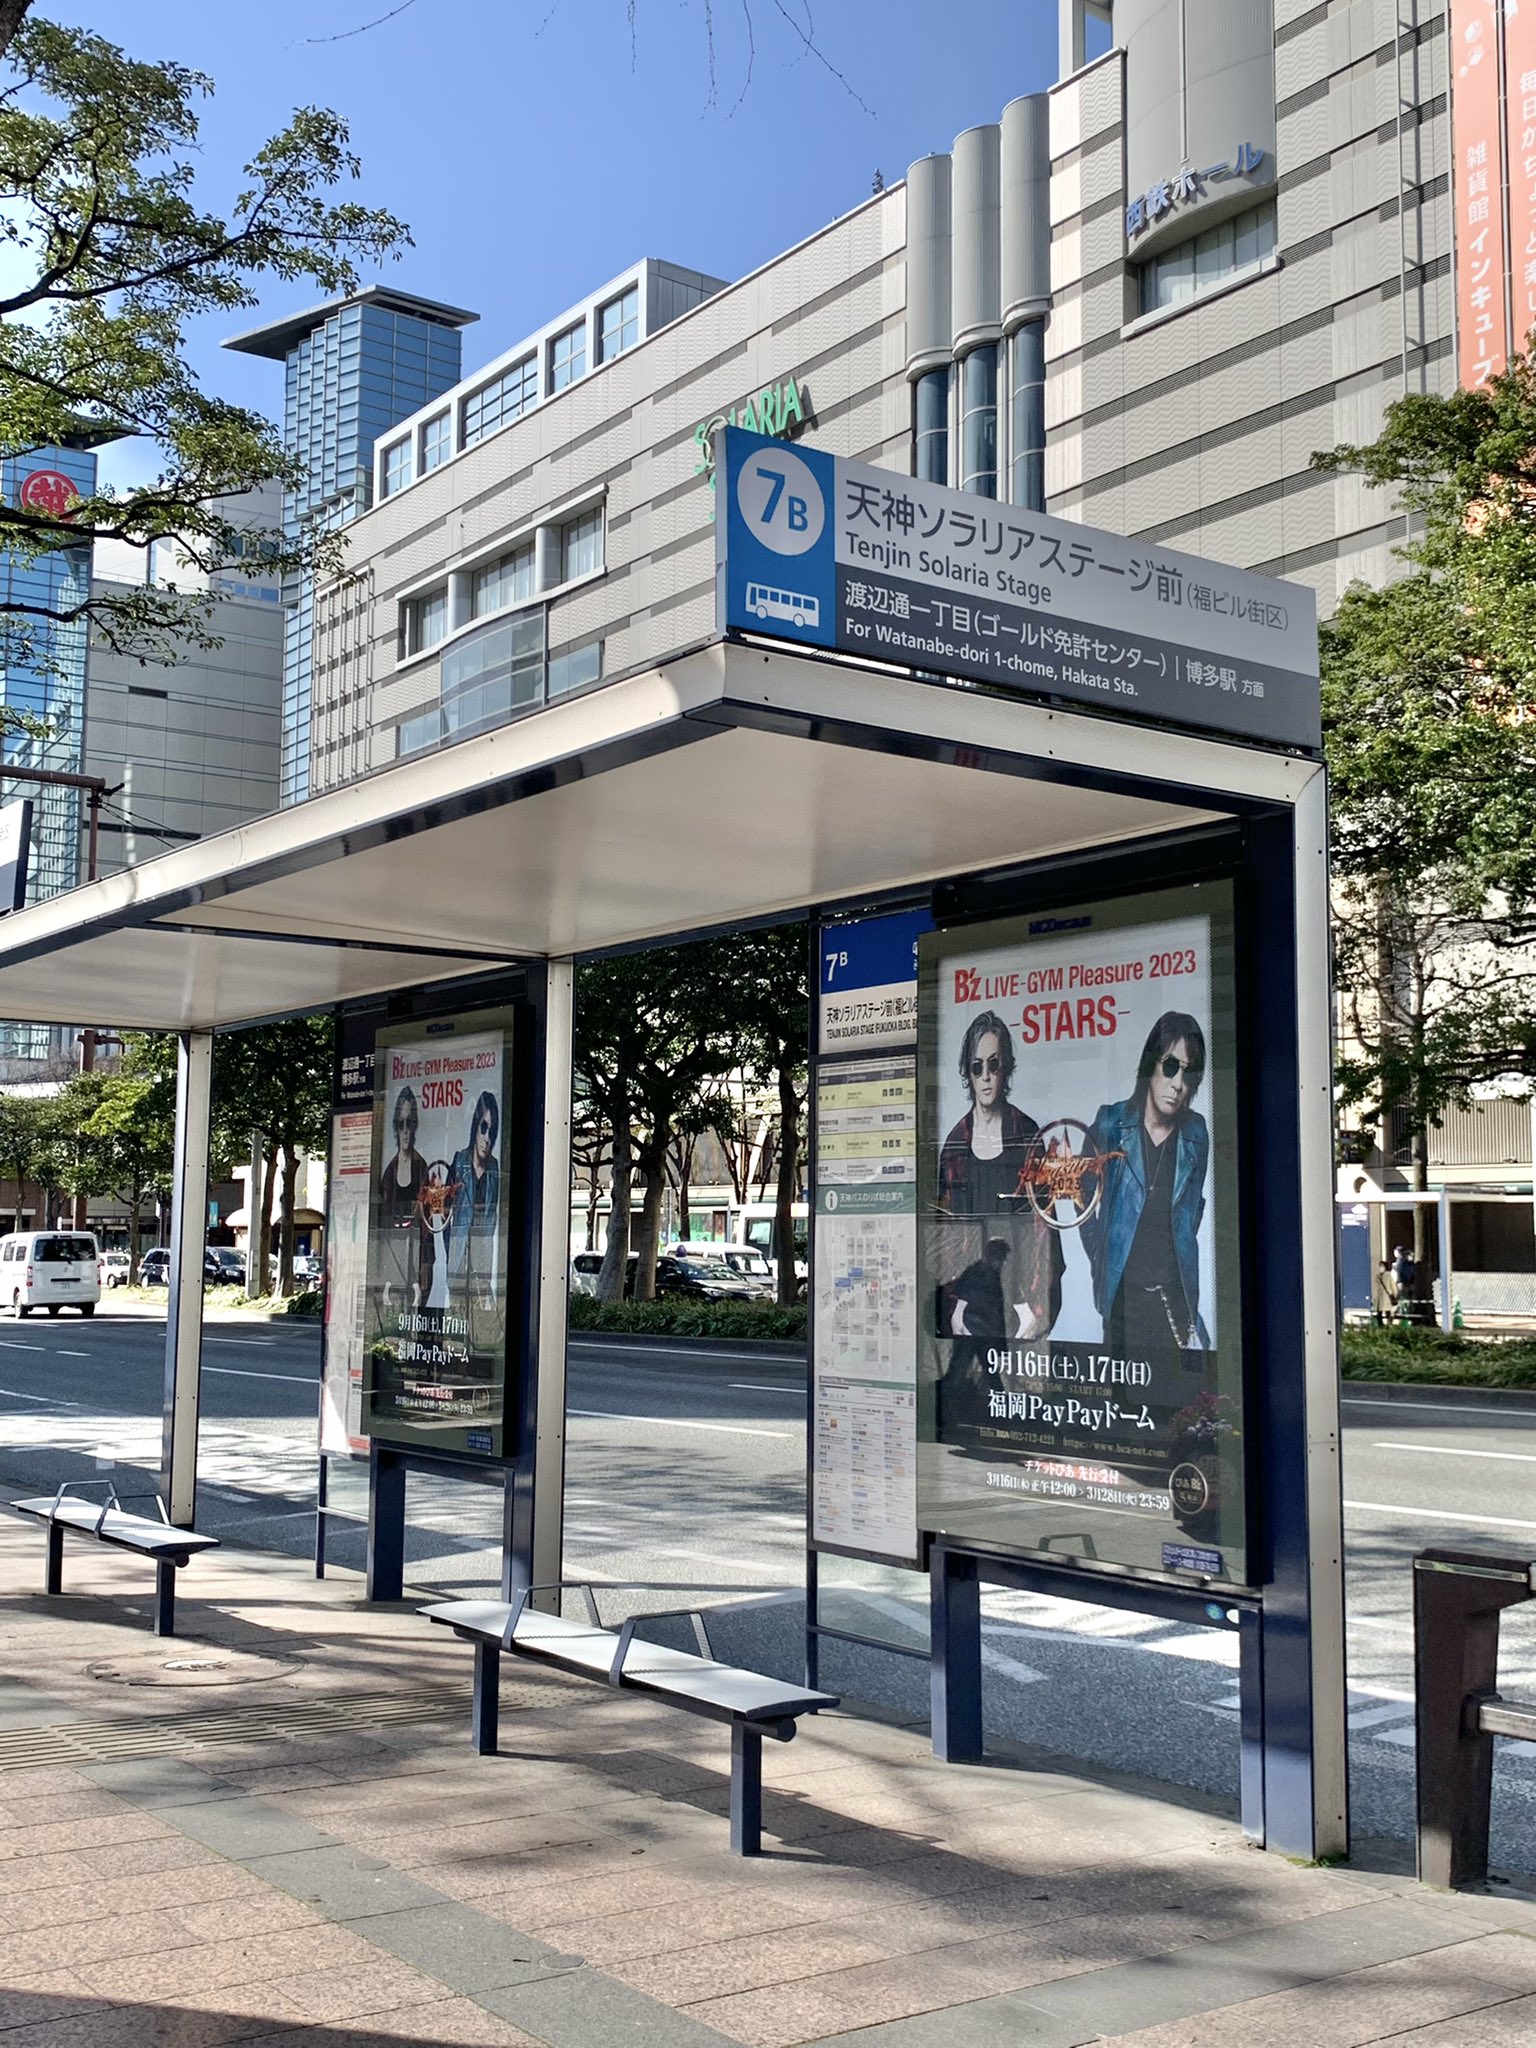 博多・天神のバス停に掲出された『B'z LIVE-GYM Pleasure 2023 -STARS-』のポスター広告